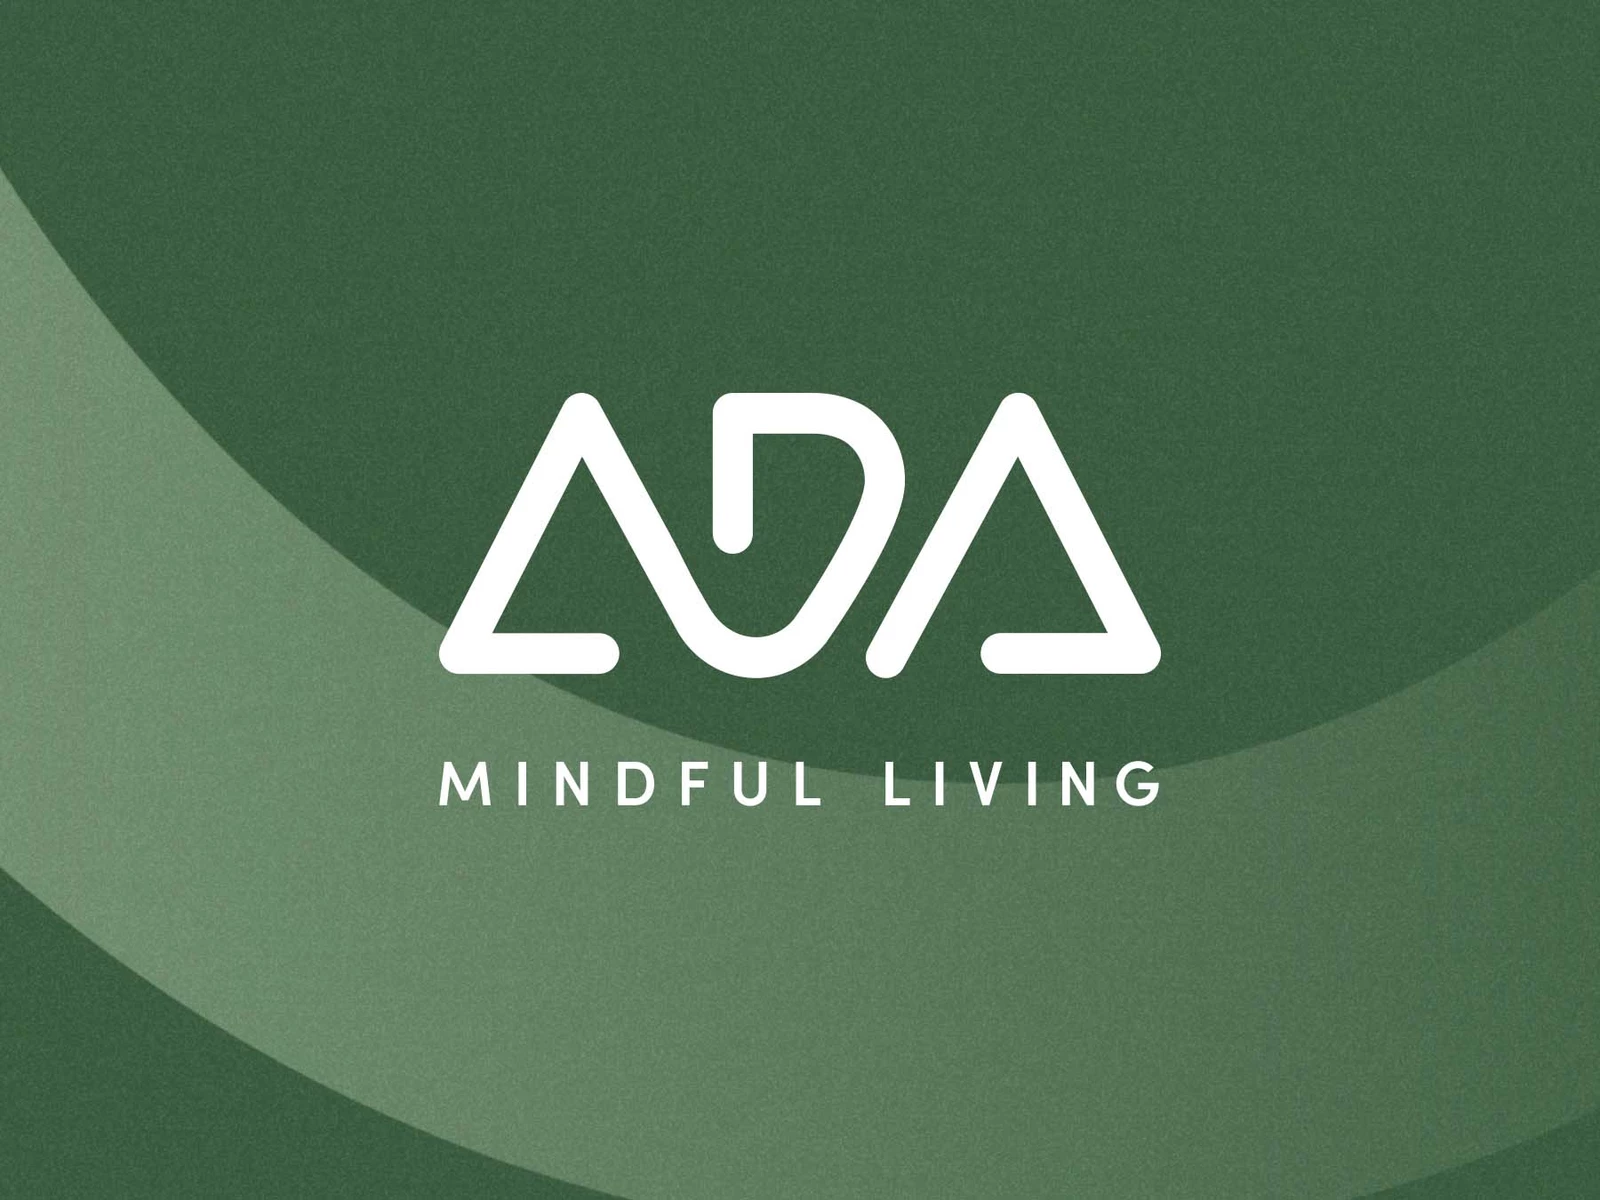 Man sieht hier das neue ADA Logo in weiß mit dem claim "Mindful Living" auf grünem Hintergrund.